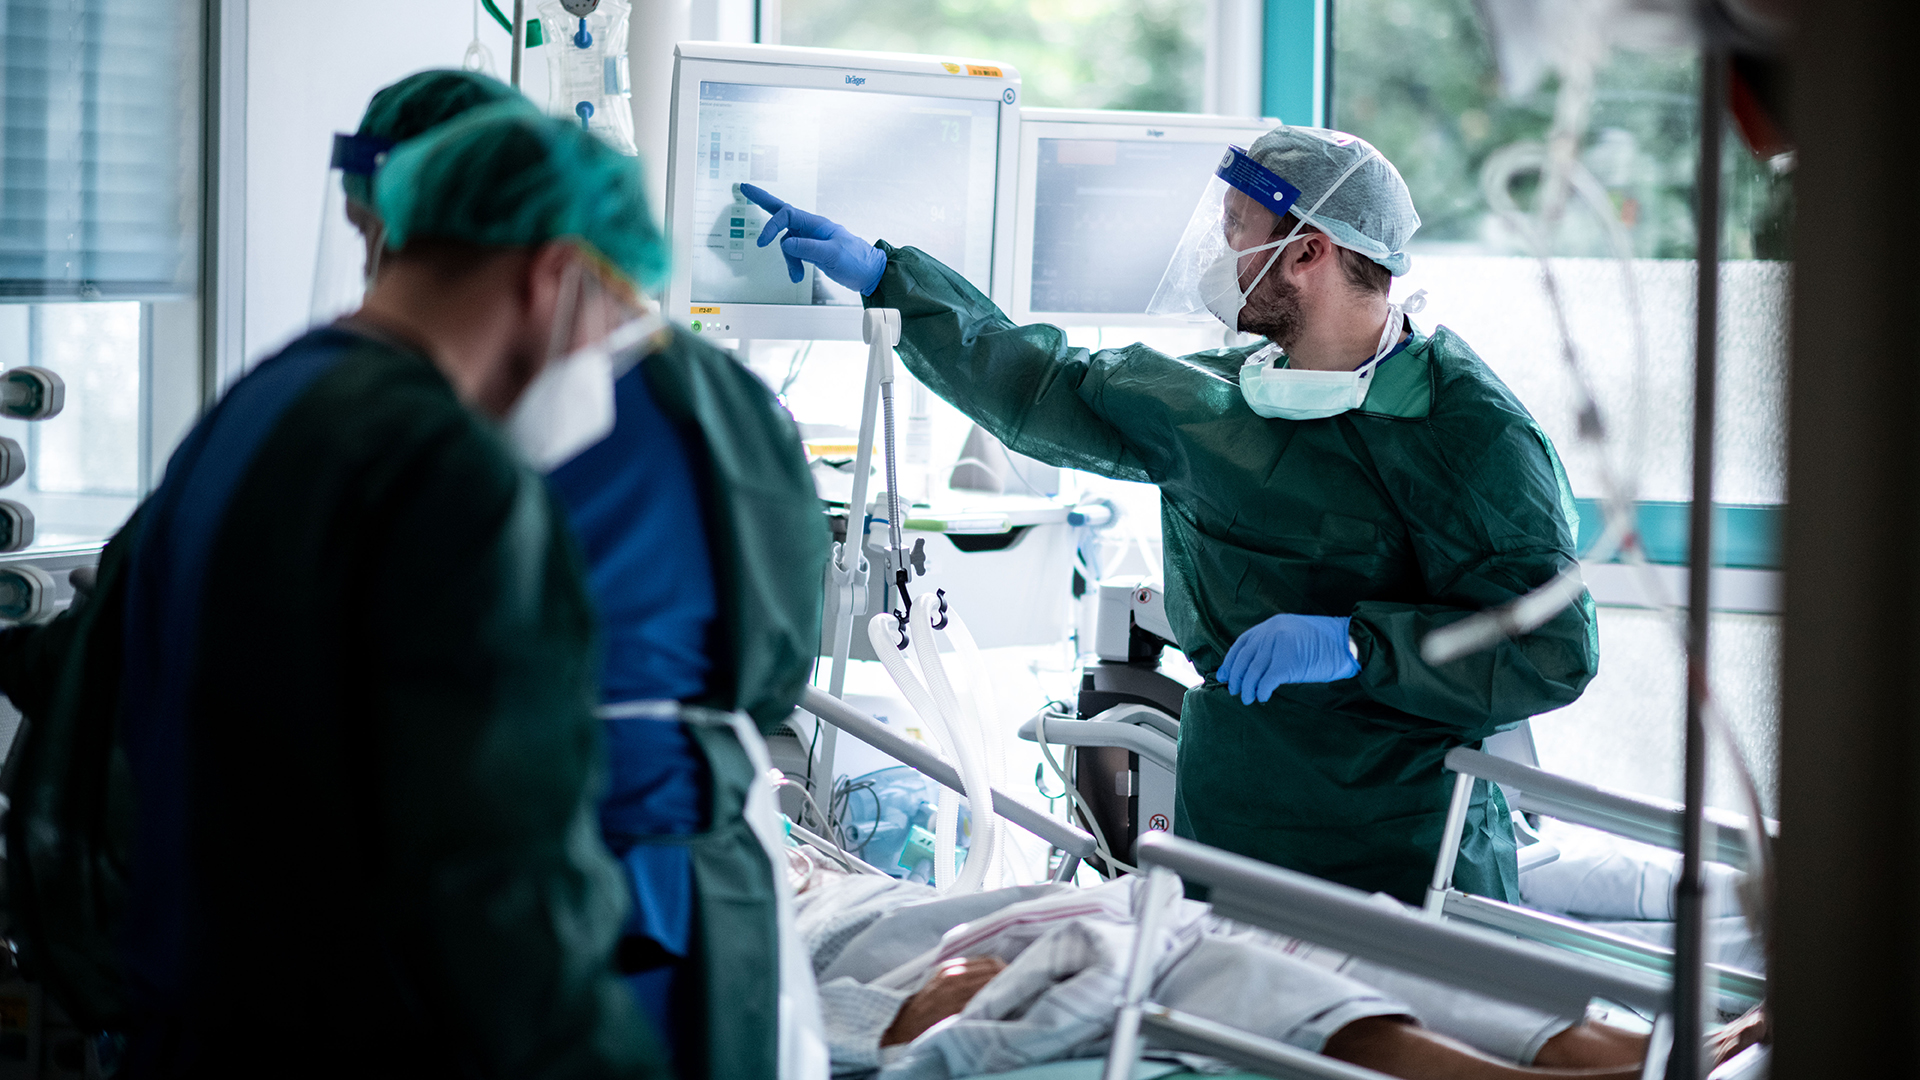 Mitarbeiter der Pflege in Schutzkleidung behandeln einen Patienten mit Corona-Infektion auf der Intensivstation Universitätsklinikums Essen.  | dpa